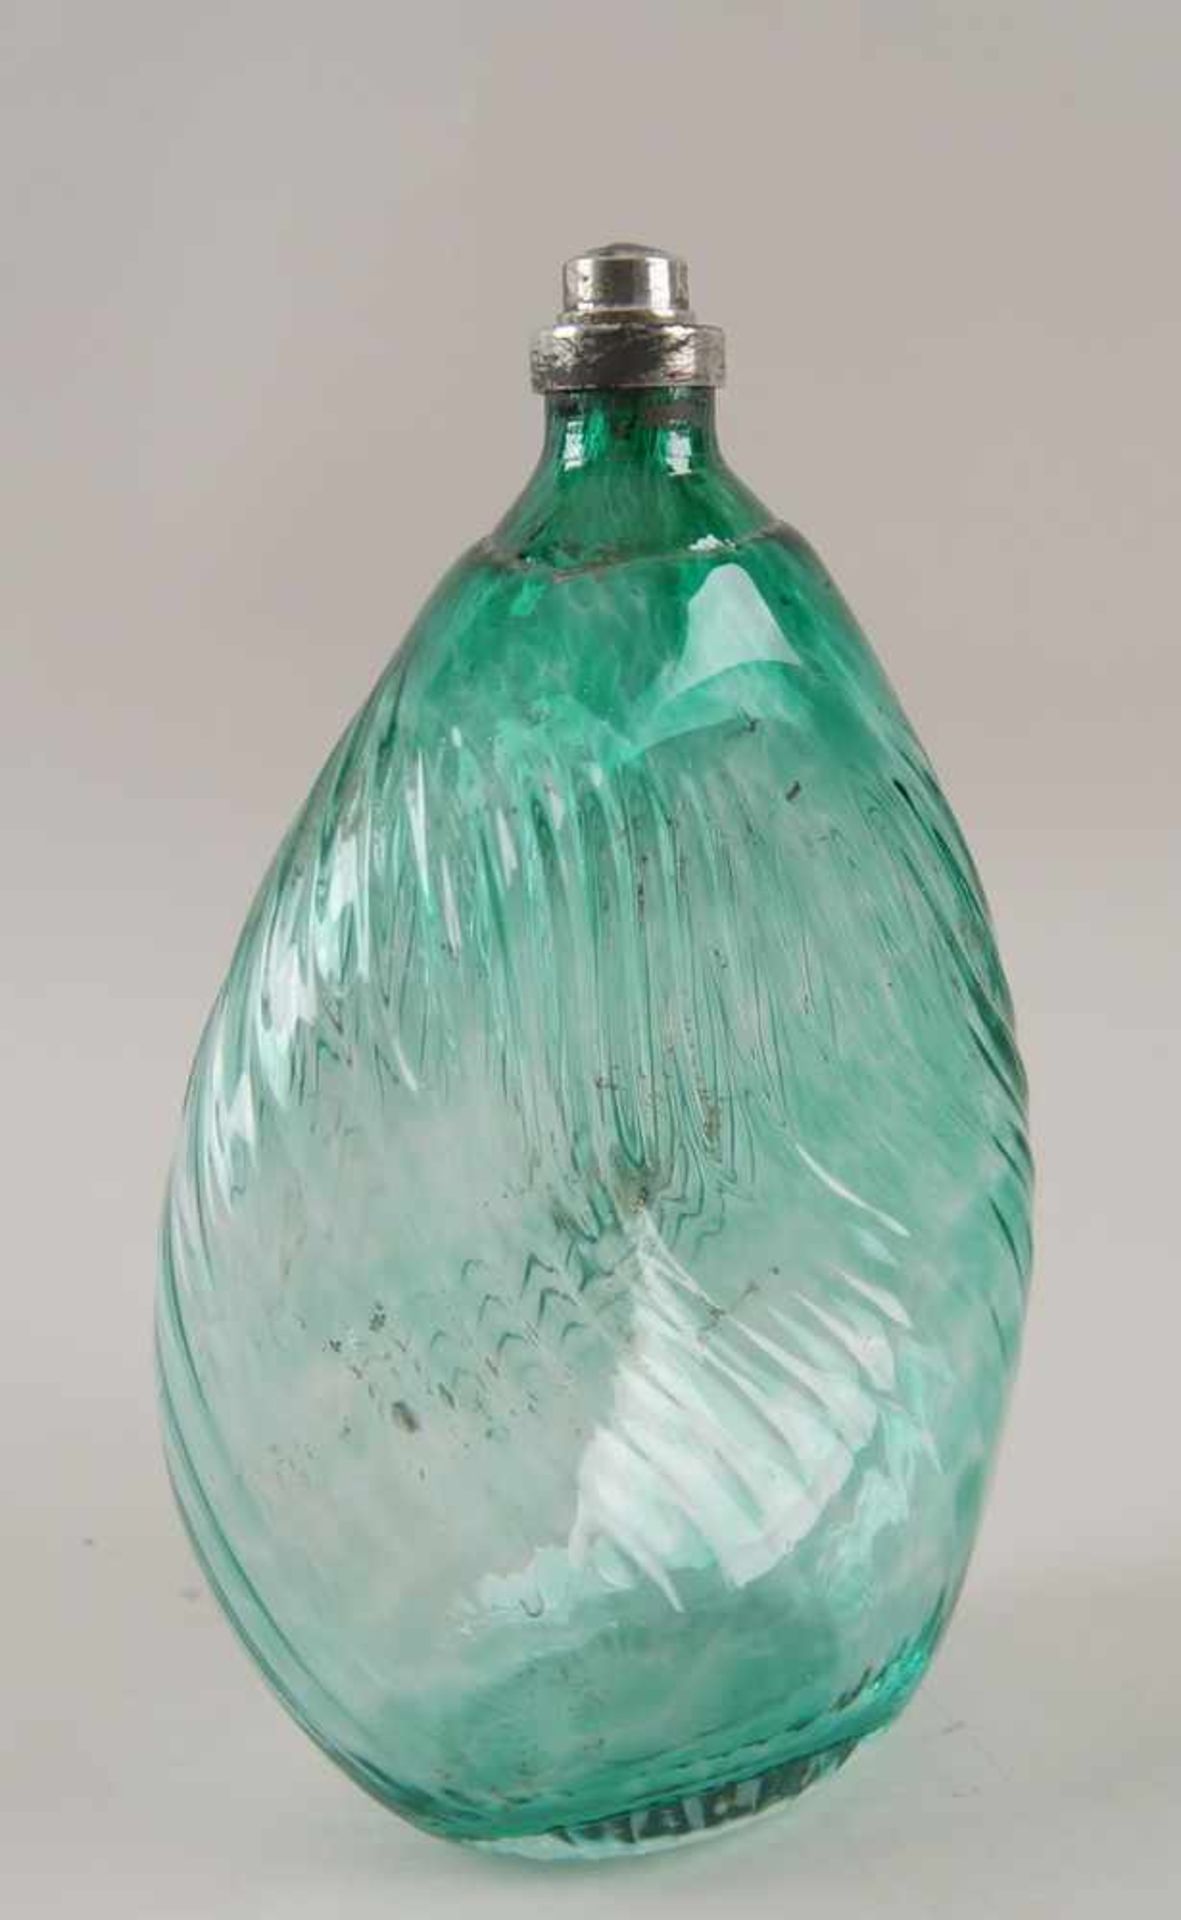 Gramsacher Nabelflasche, Tirol, ~ 1900, hellgrünes Glas, H 23,5cm